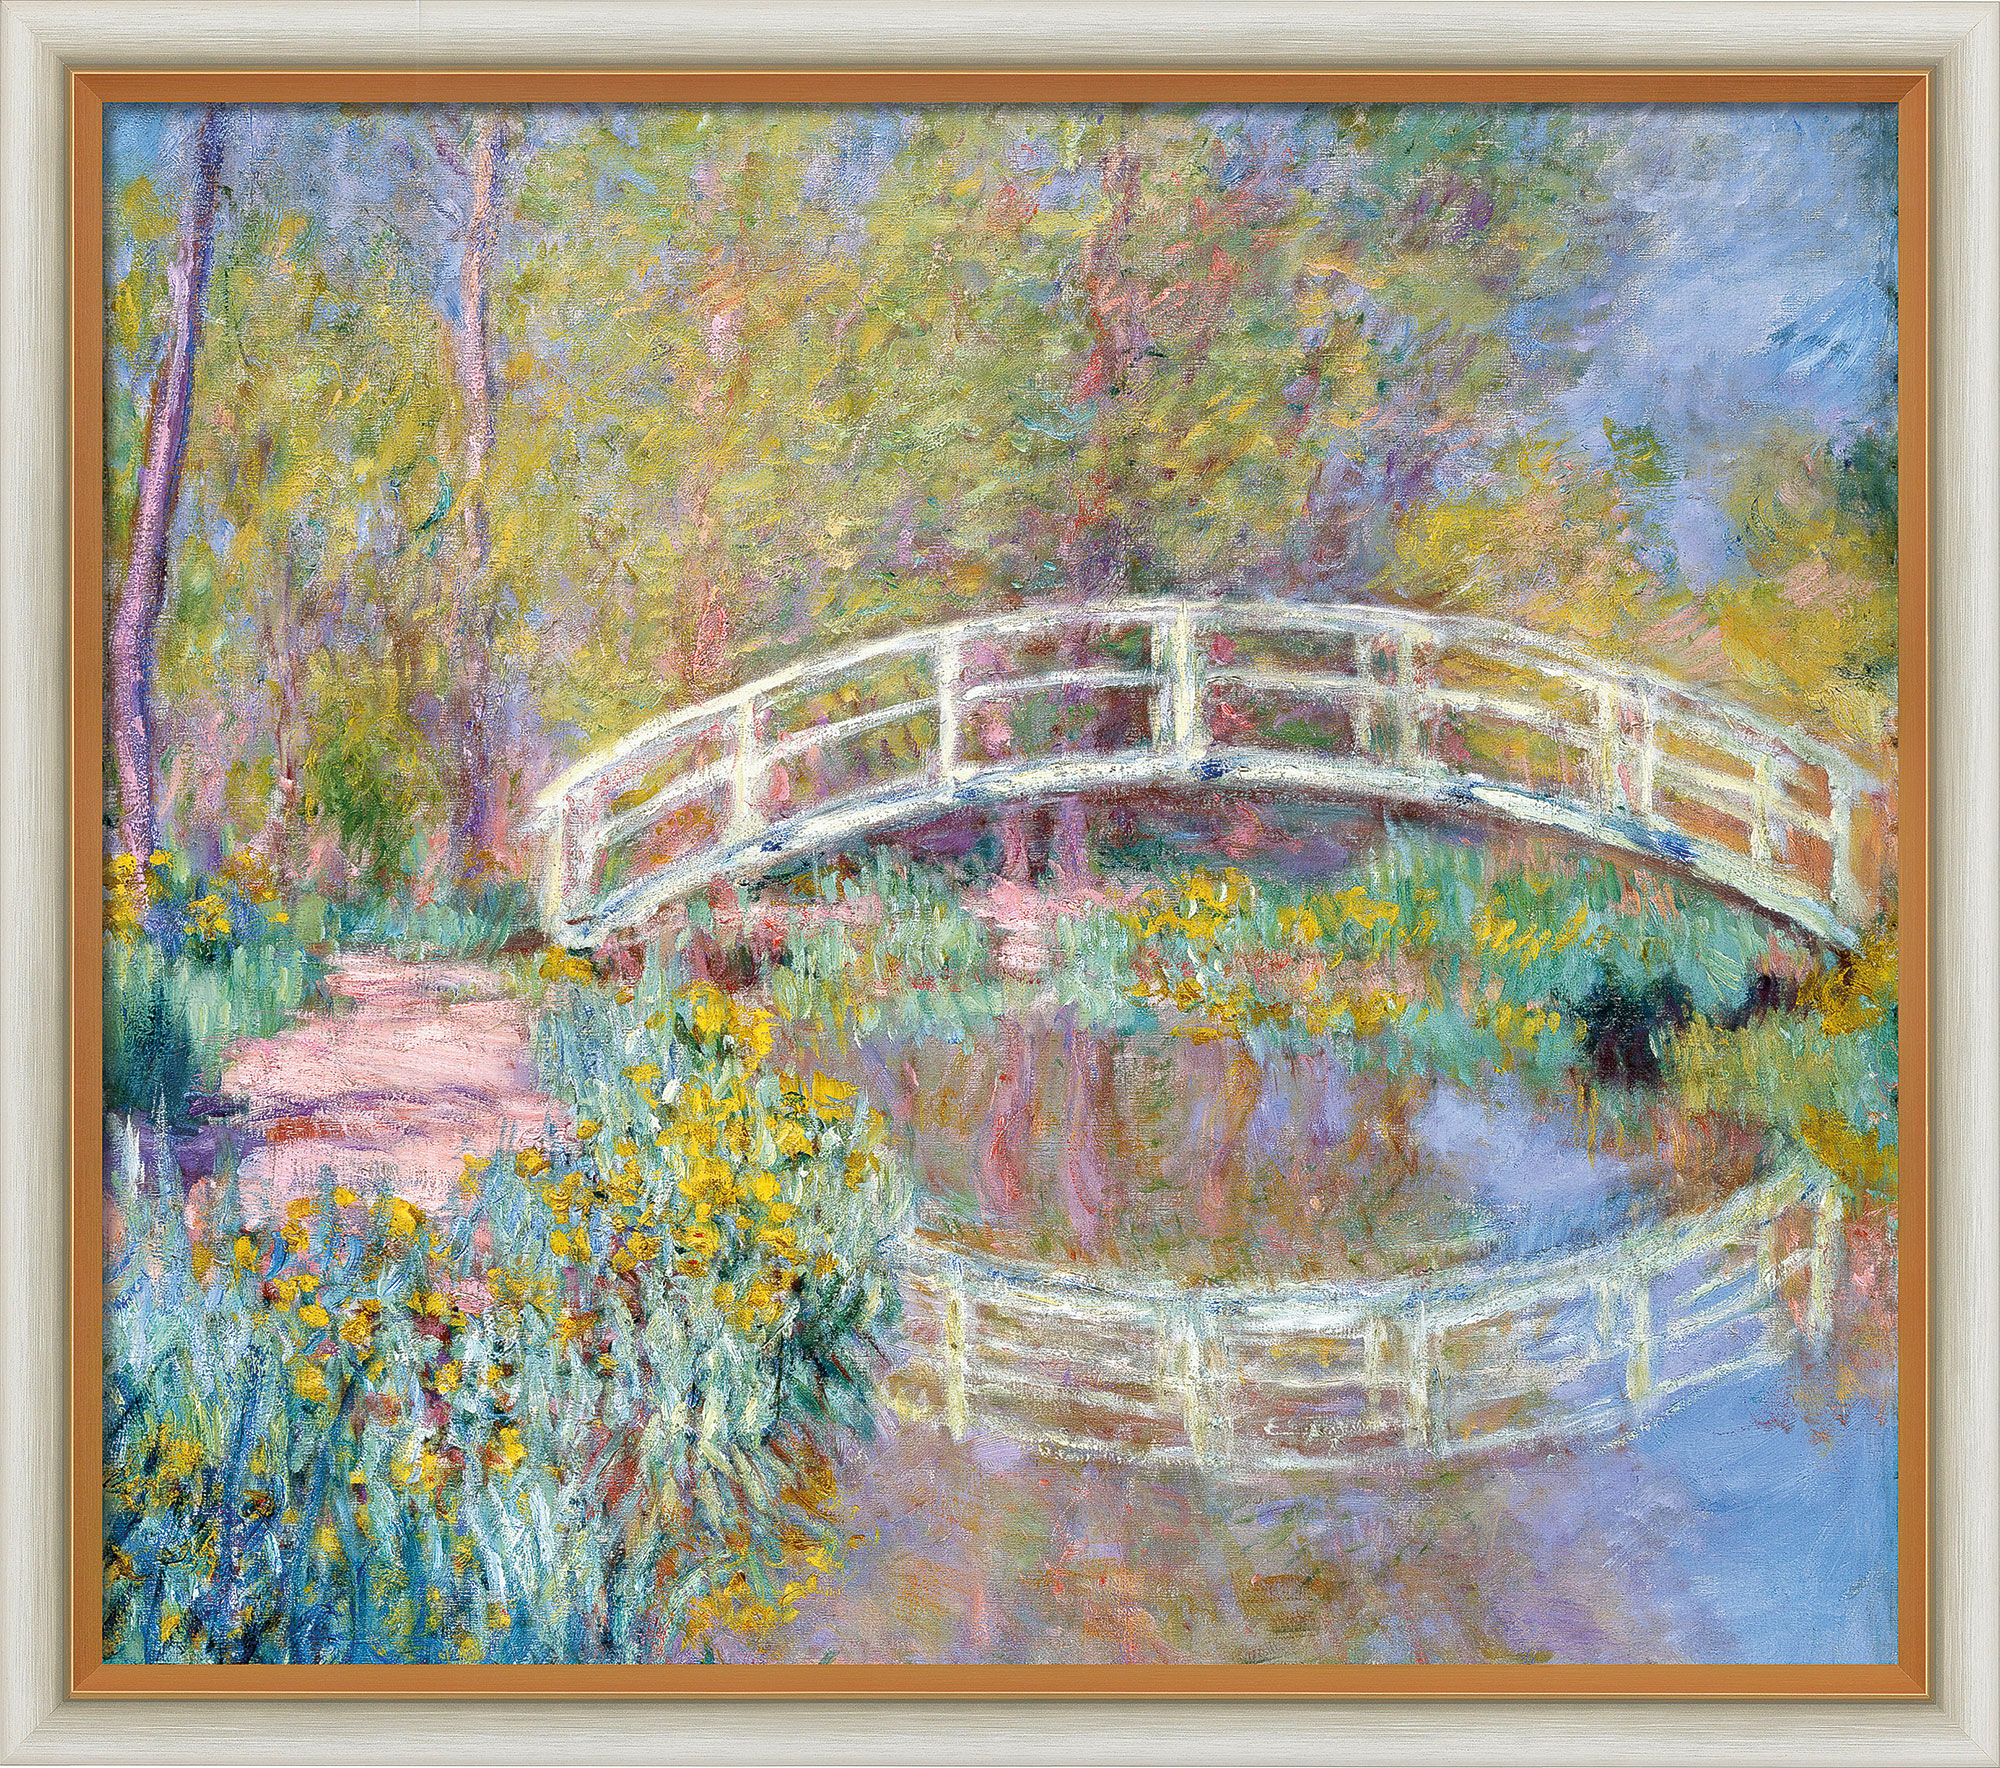 Beeld "Brug in de tuin van Monet" (1900), licht ingelijste versie von Claude Monet